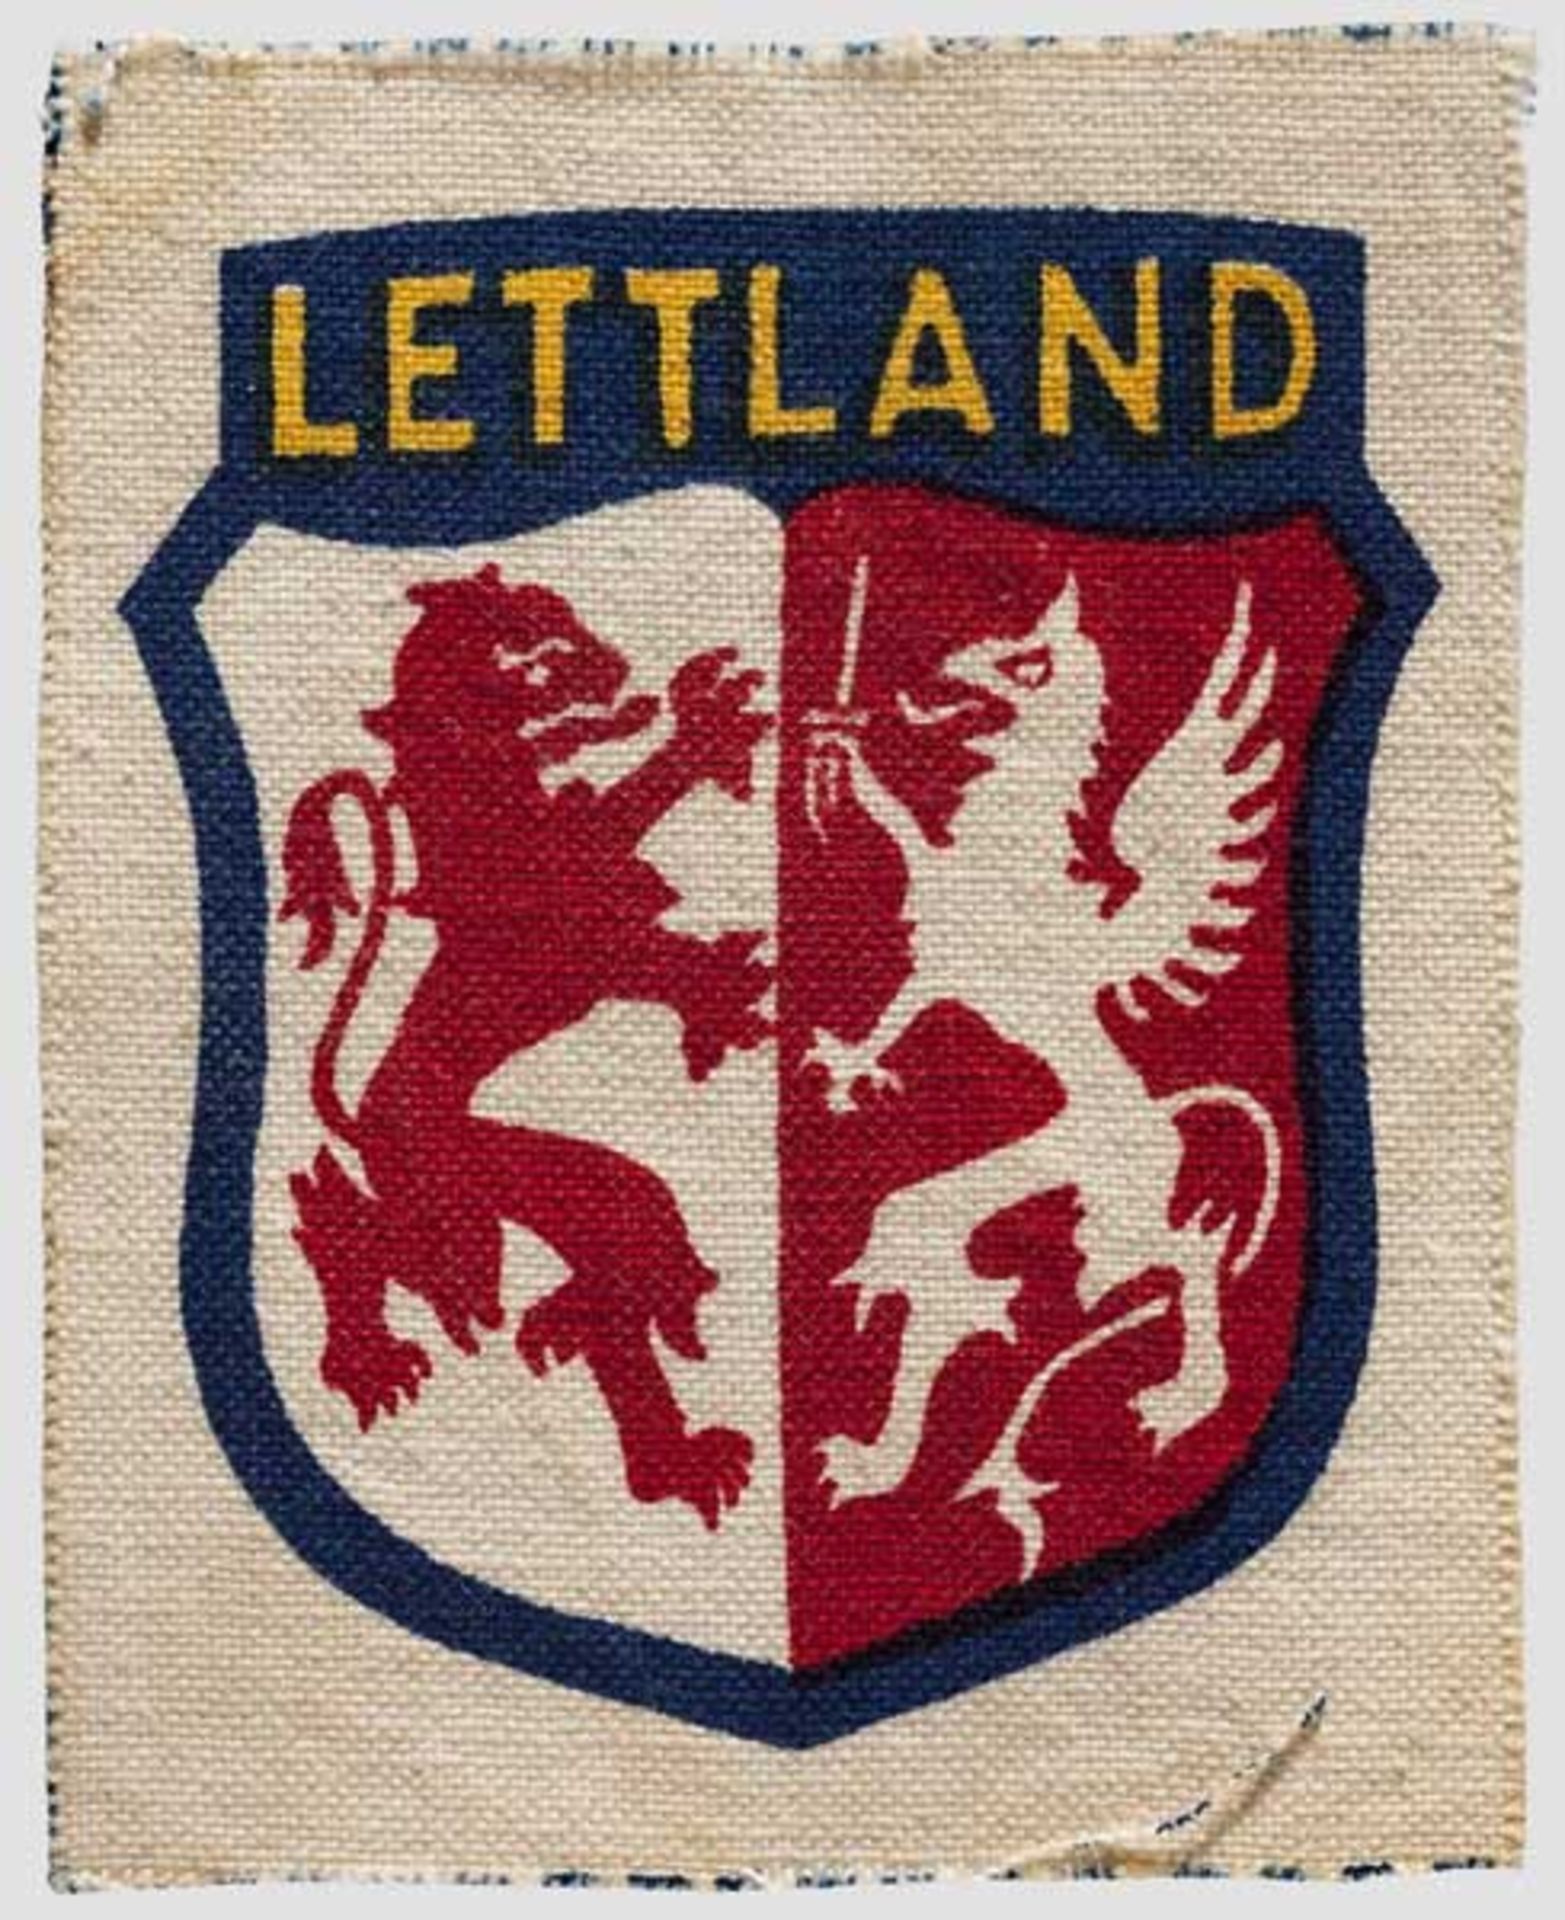 Ärmelschild für lettische Freiwillige in der Wehrmacht Gedruckte Ausführung mit farbiger Darstellung